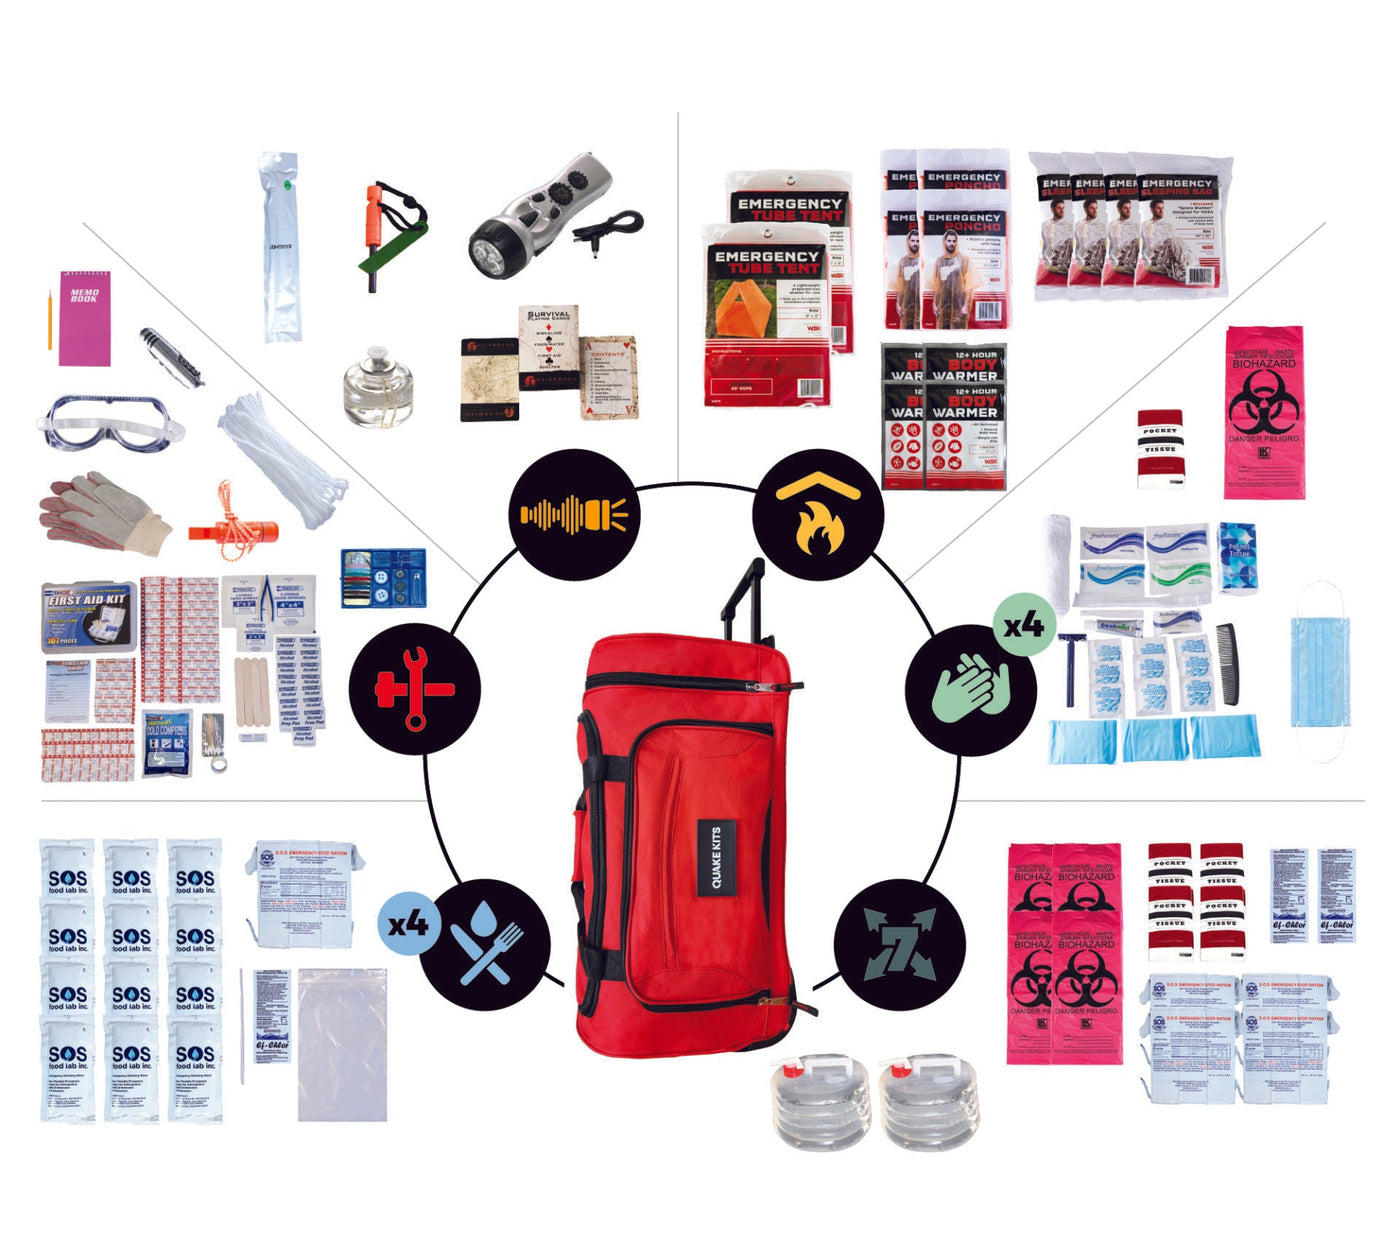 Completely Prepared Emergency Kit - 4 Person / 1 Week